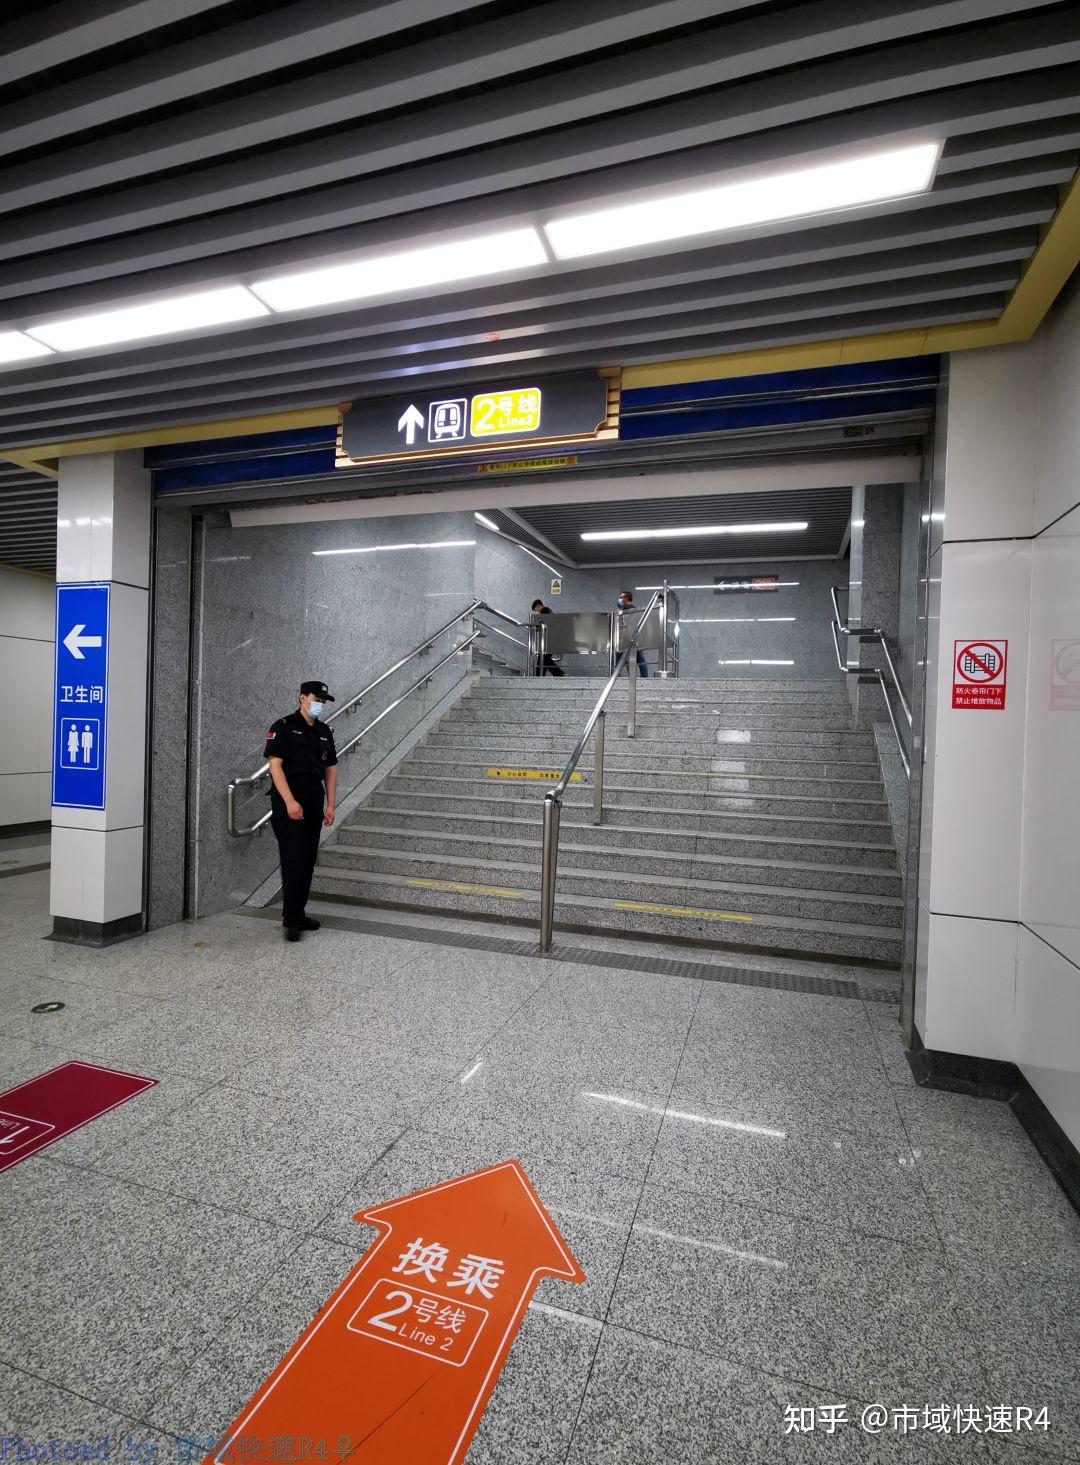 彭城广场站站厅层,出入口编号已经编到了13号口,但实际对外开放的只有